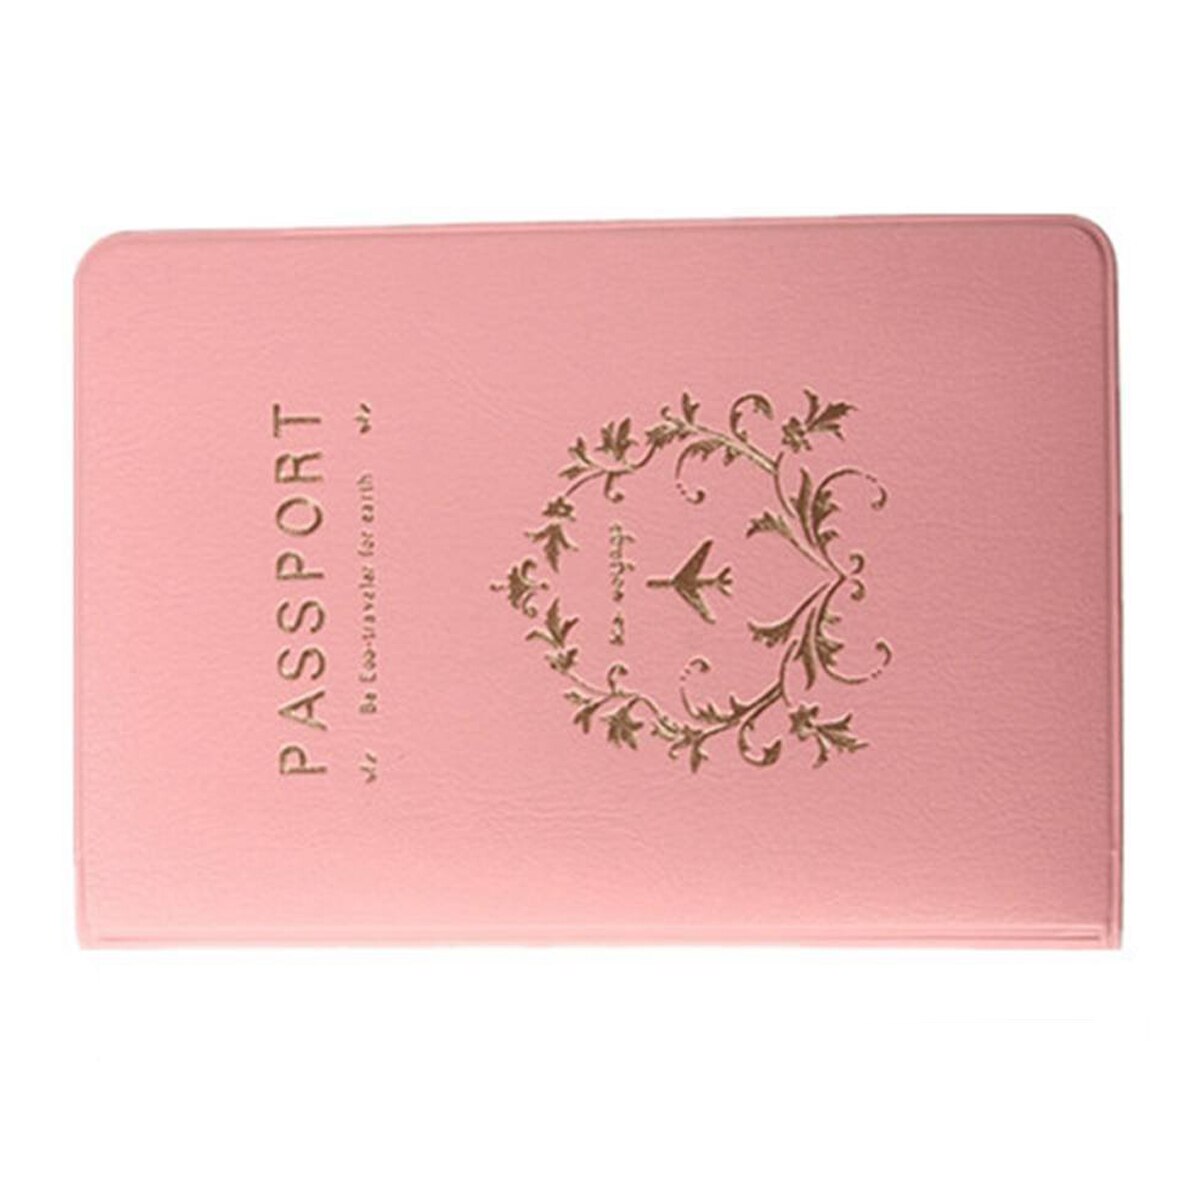 Organizer case of passport Wallets Passport Holder Pink Flower Vine - ebowsos